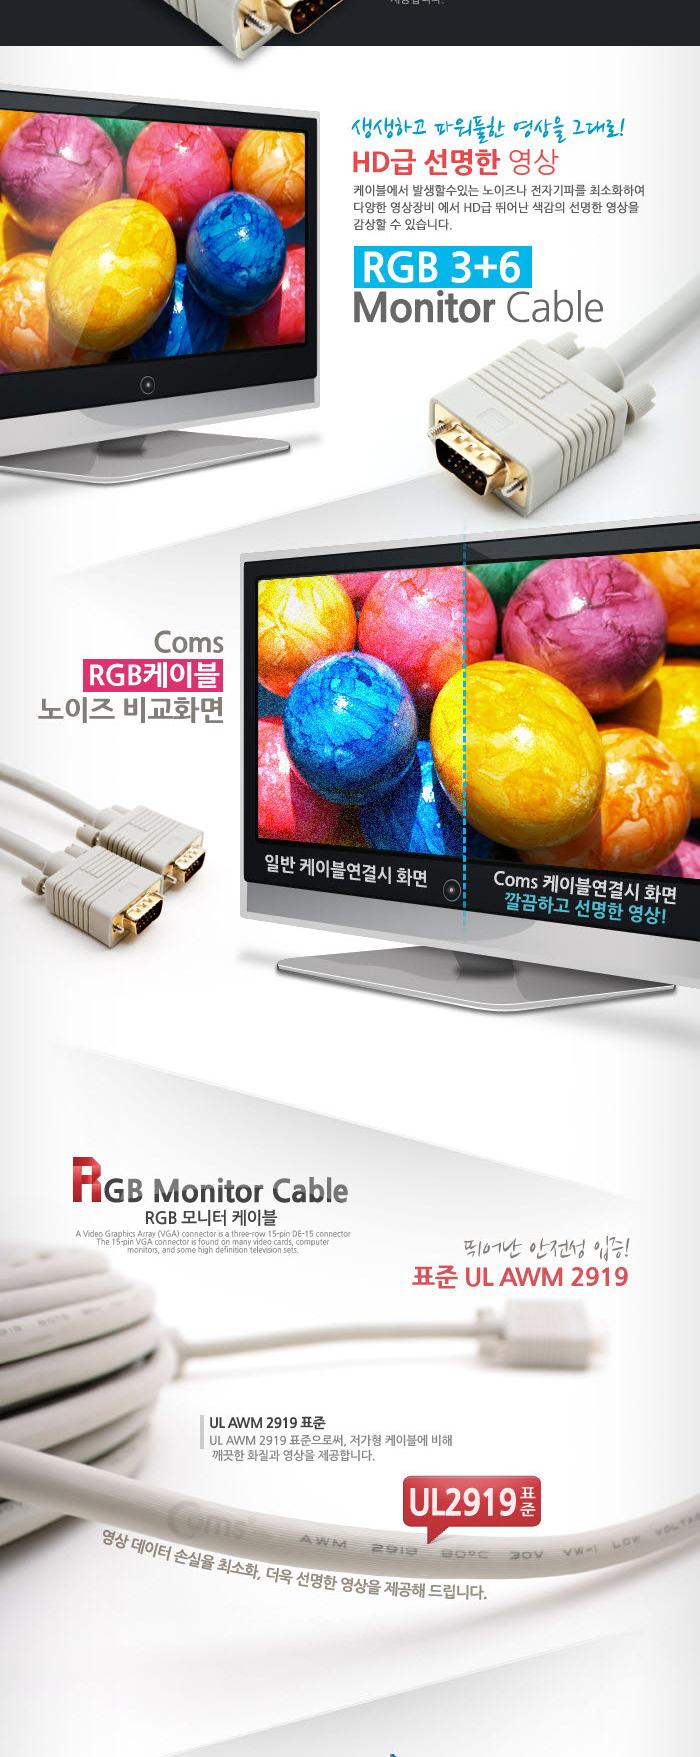 Coms 고급형 모니터 RGB(VGA. D-SUB) 케이블 15M - M M 타입 RGB모니터케이블 RGB케이블 RGB RGB보급형 모니터케이블 비디오케이블 케이블 영상케이블